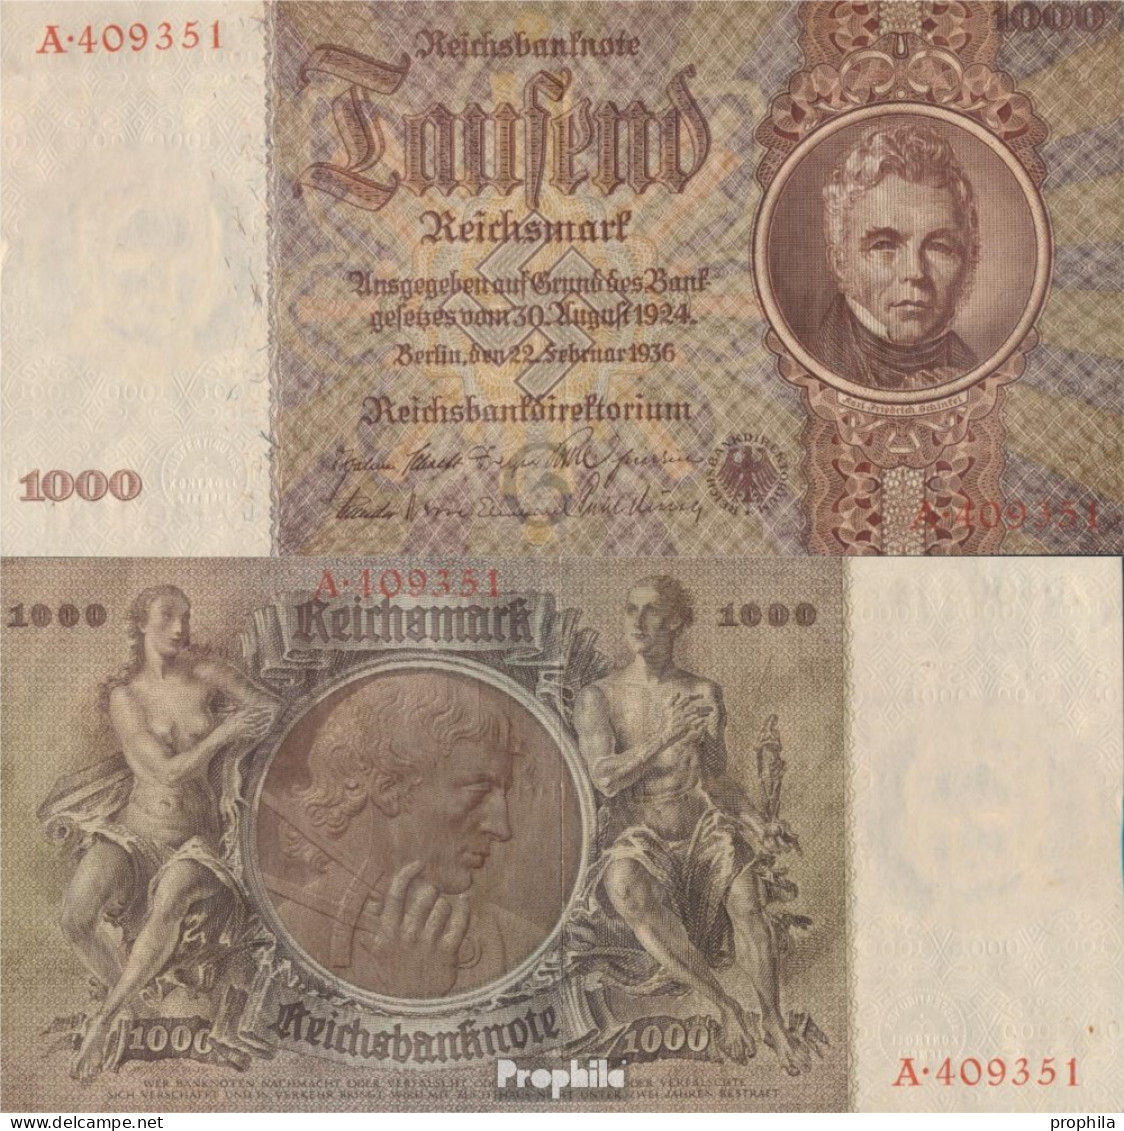 Deutsches Reich Rosenbg: 177 Udr.- Bst. G, Serie:A Gebraucht (III) 1936 1.000 Reichsmark - 1.000 Reichsmark